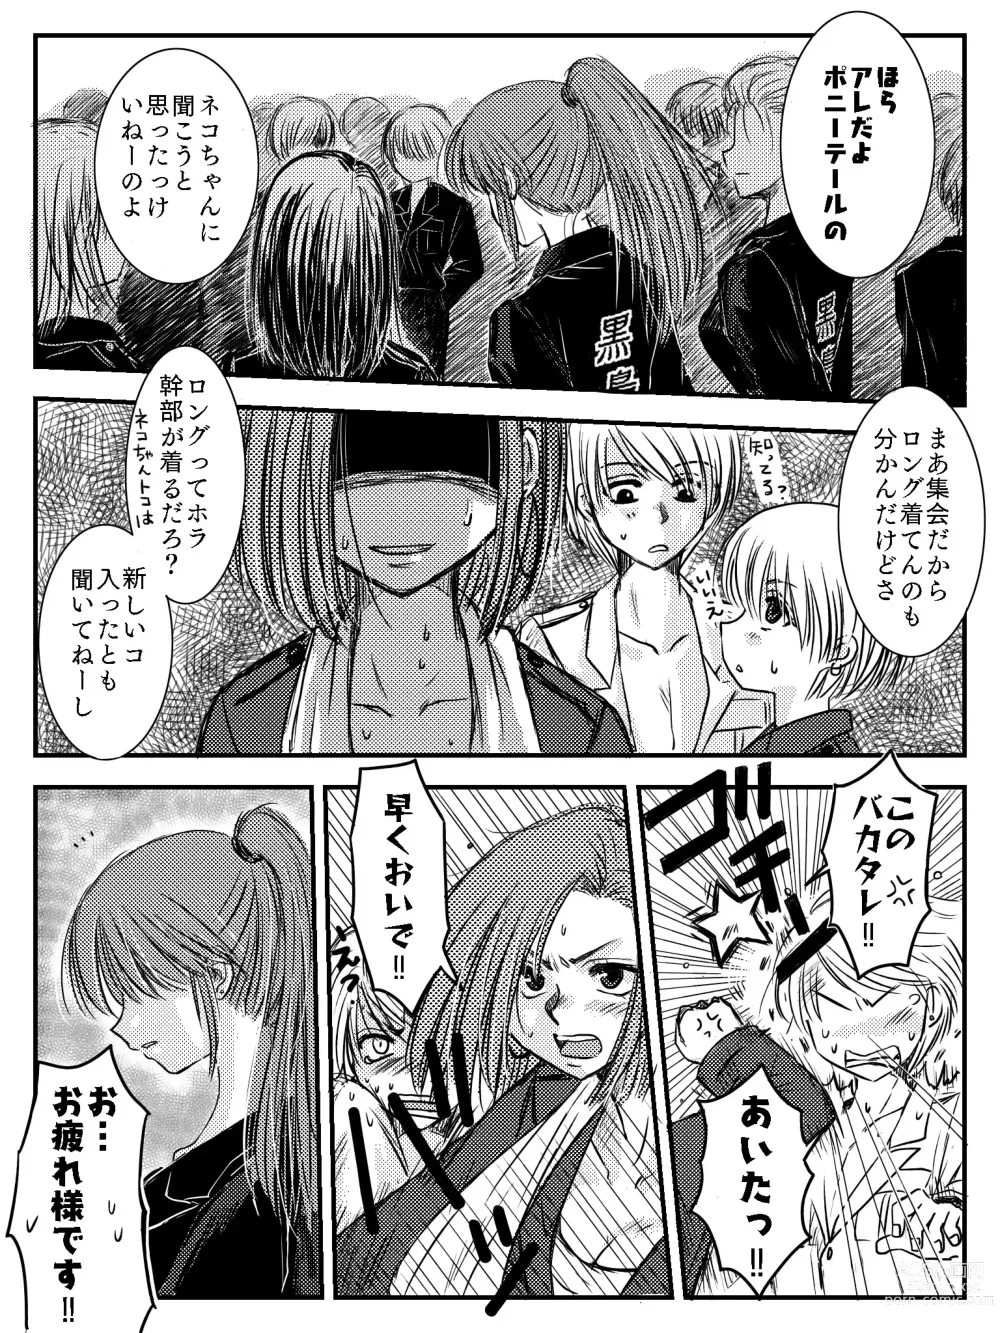 Page 5 of doujinshi LADIES NAVIGATION Episode 4